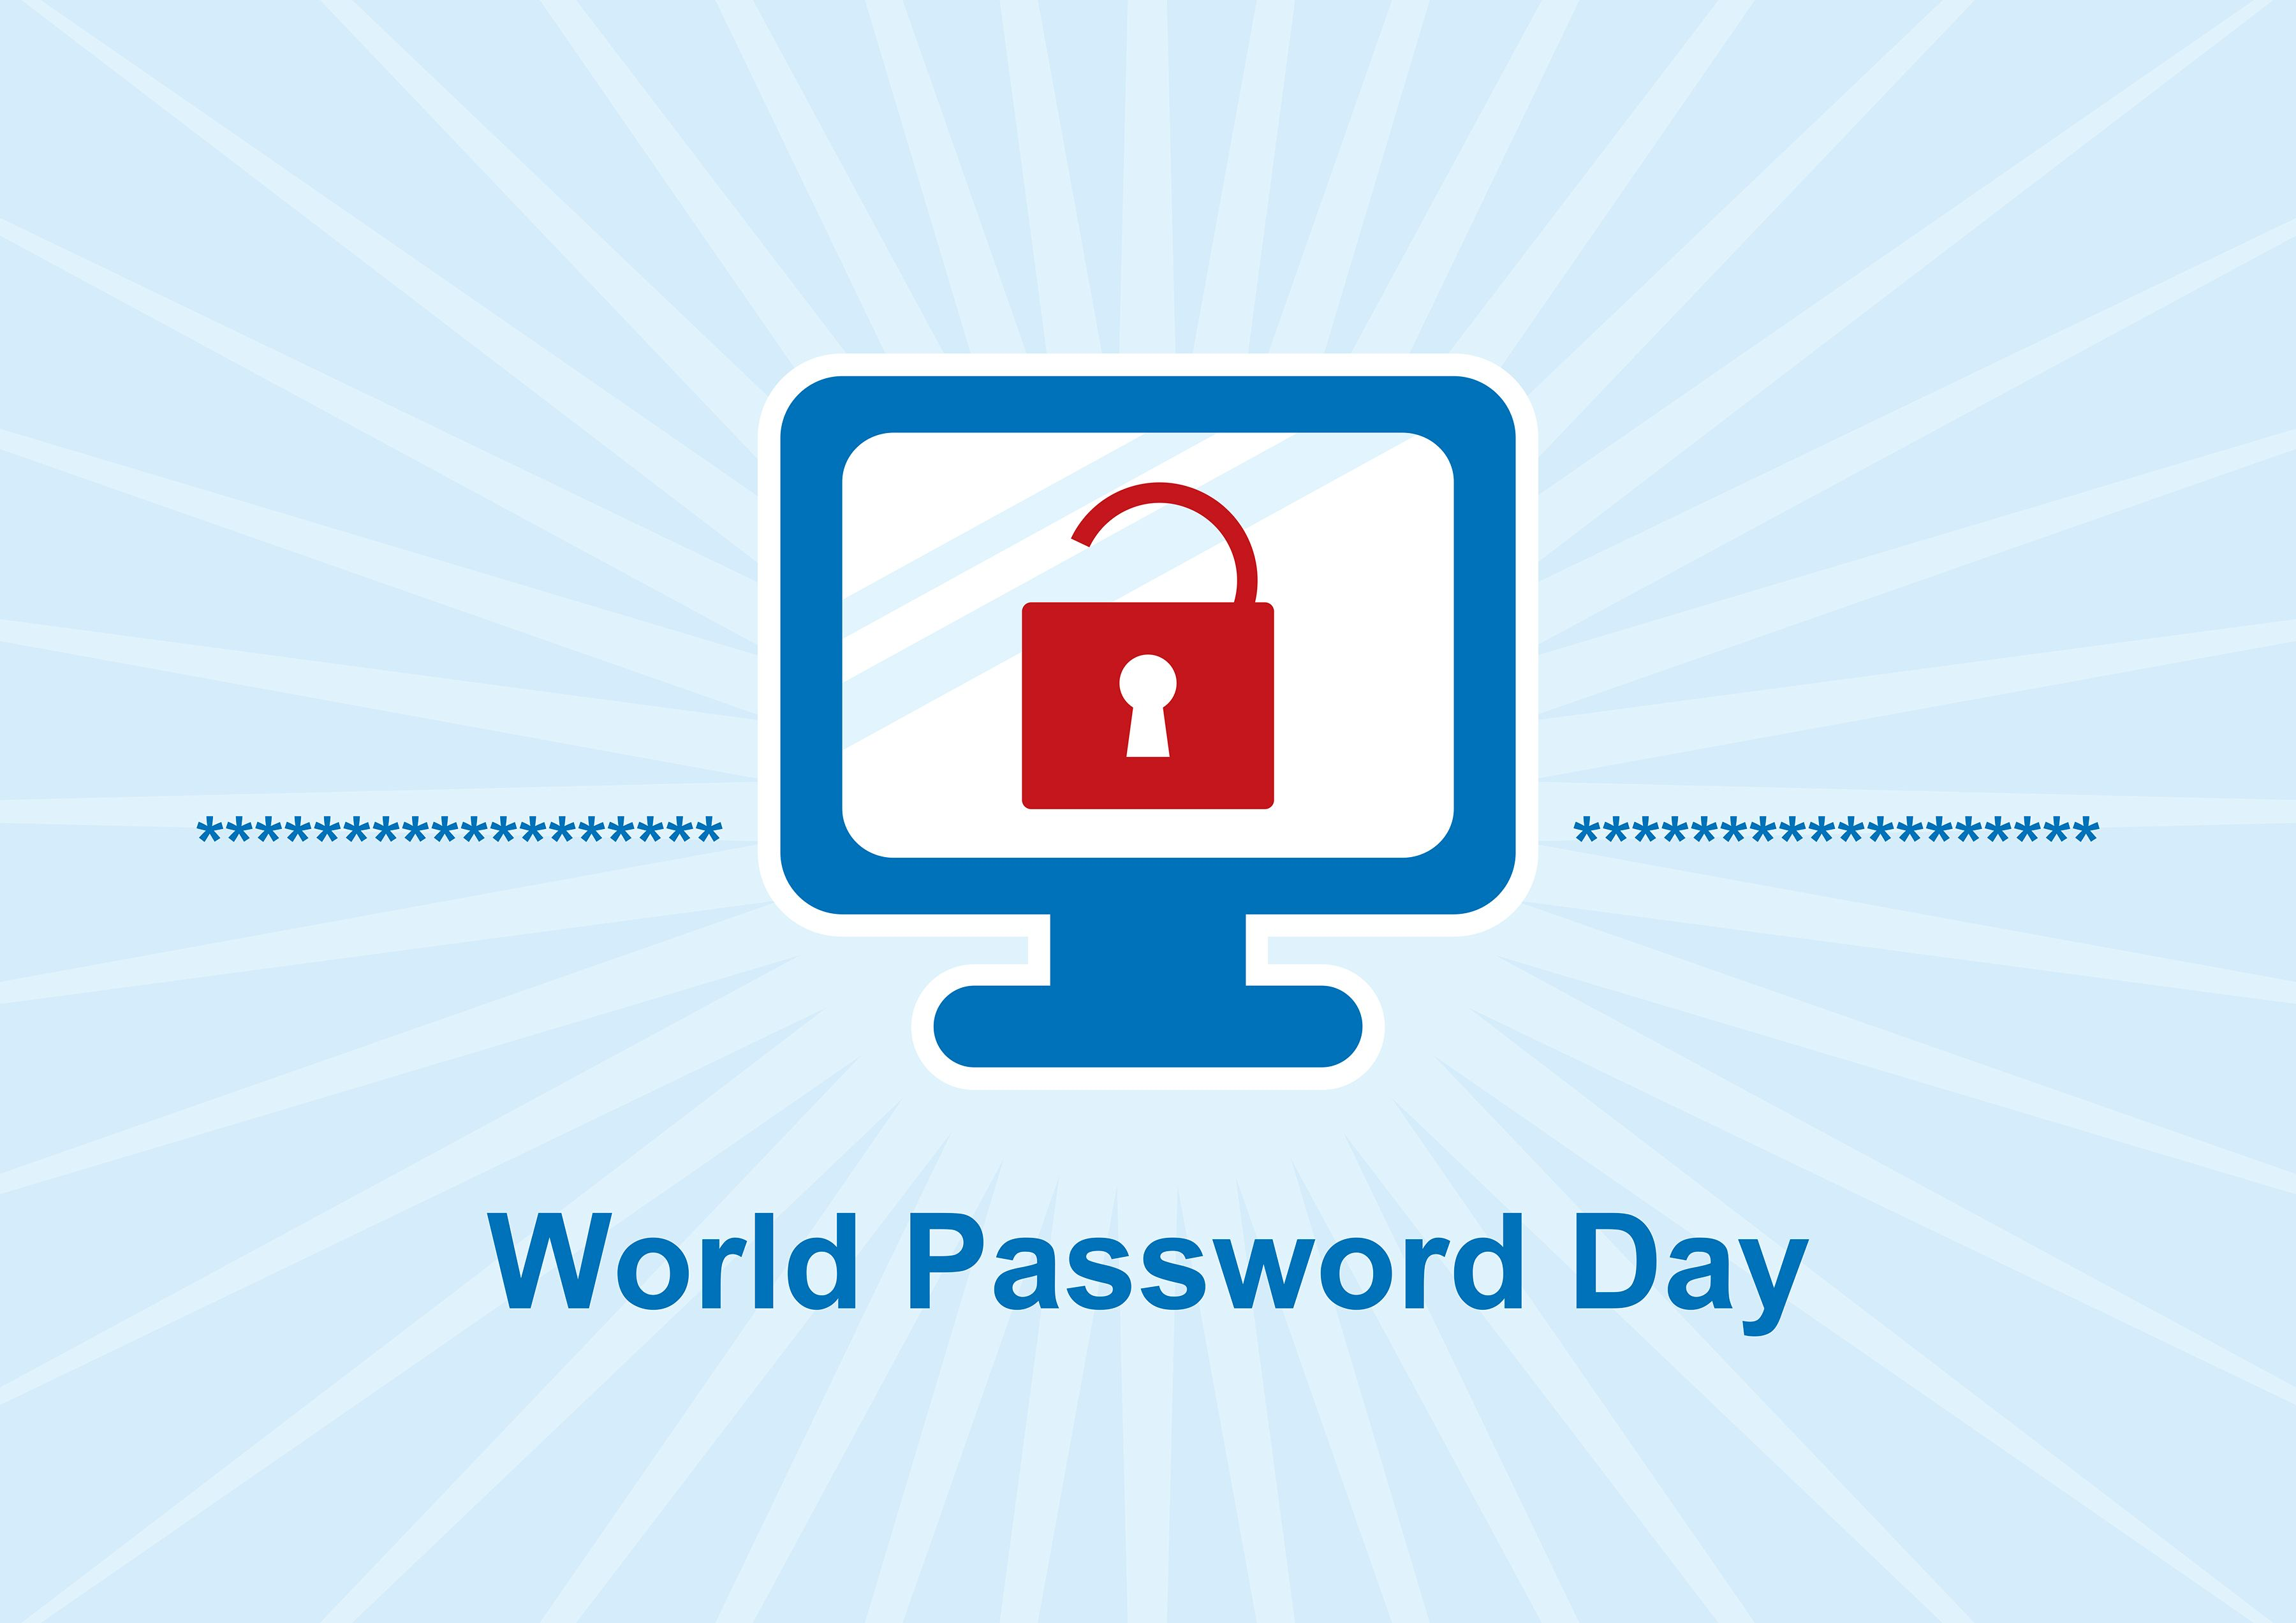 World password. Всемирный день пароля. Всемирный день пароля (World password Day). День пароля картинки. Всемирный день пароля (World password Day) демотиватор.